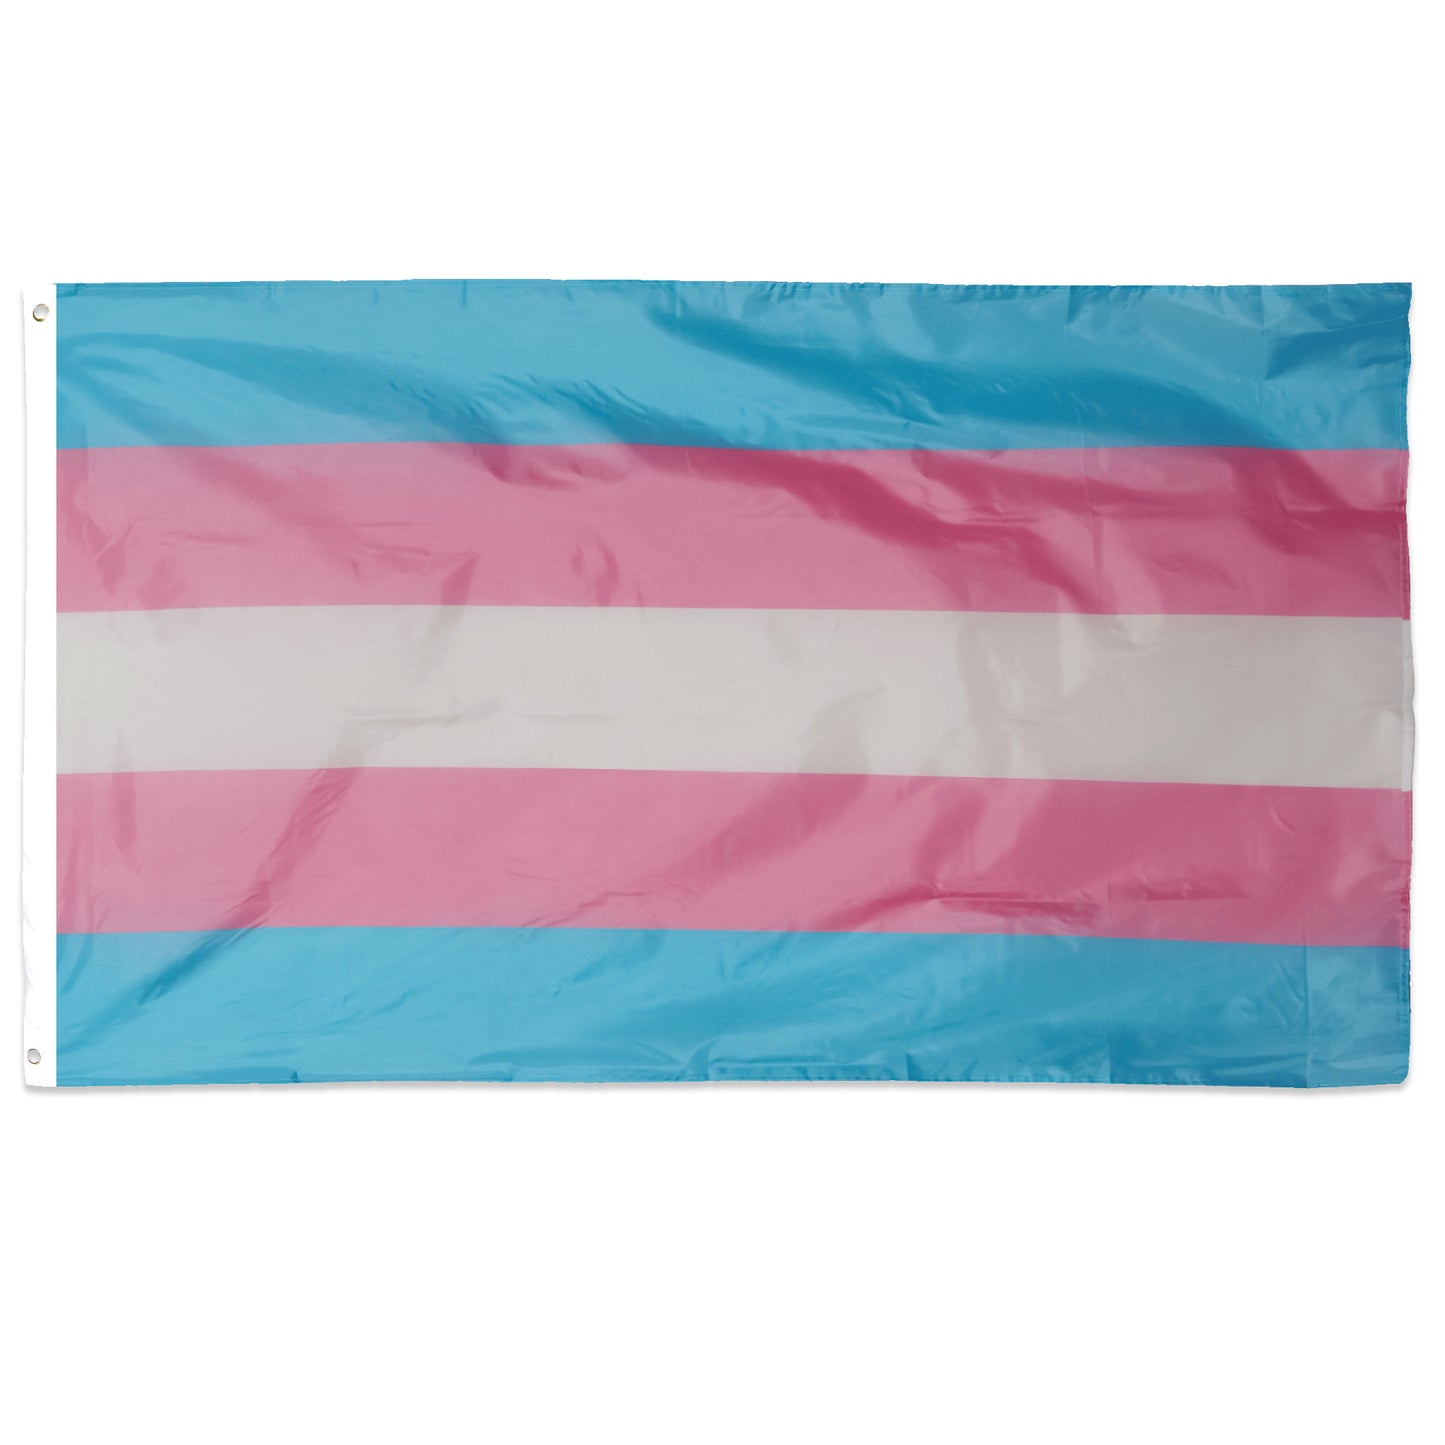 Transgender Pride LGBTQ+ 5ft x 3ft Flag with Eyelets